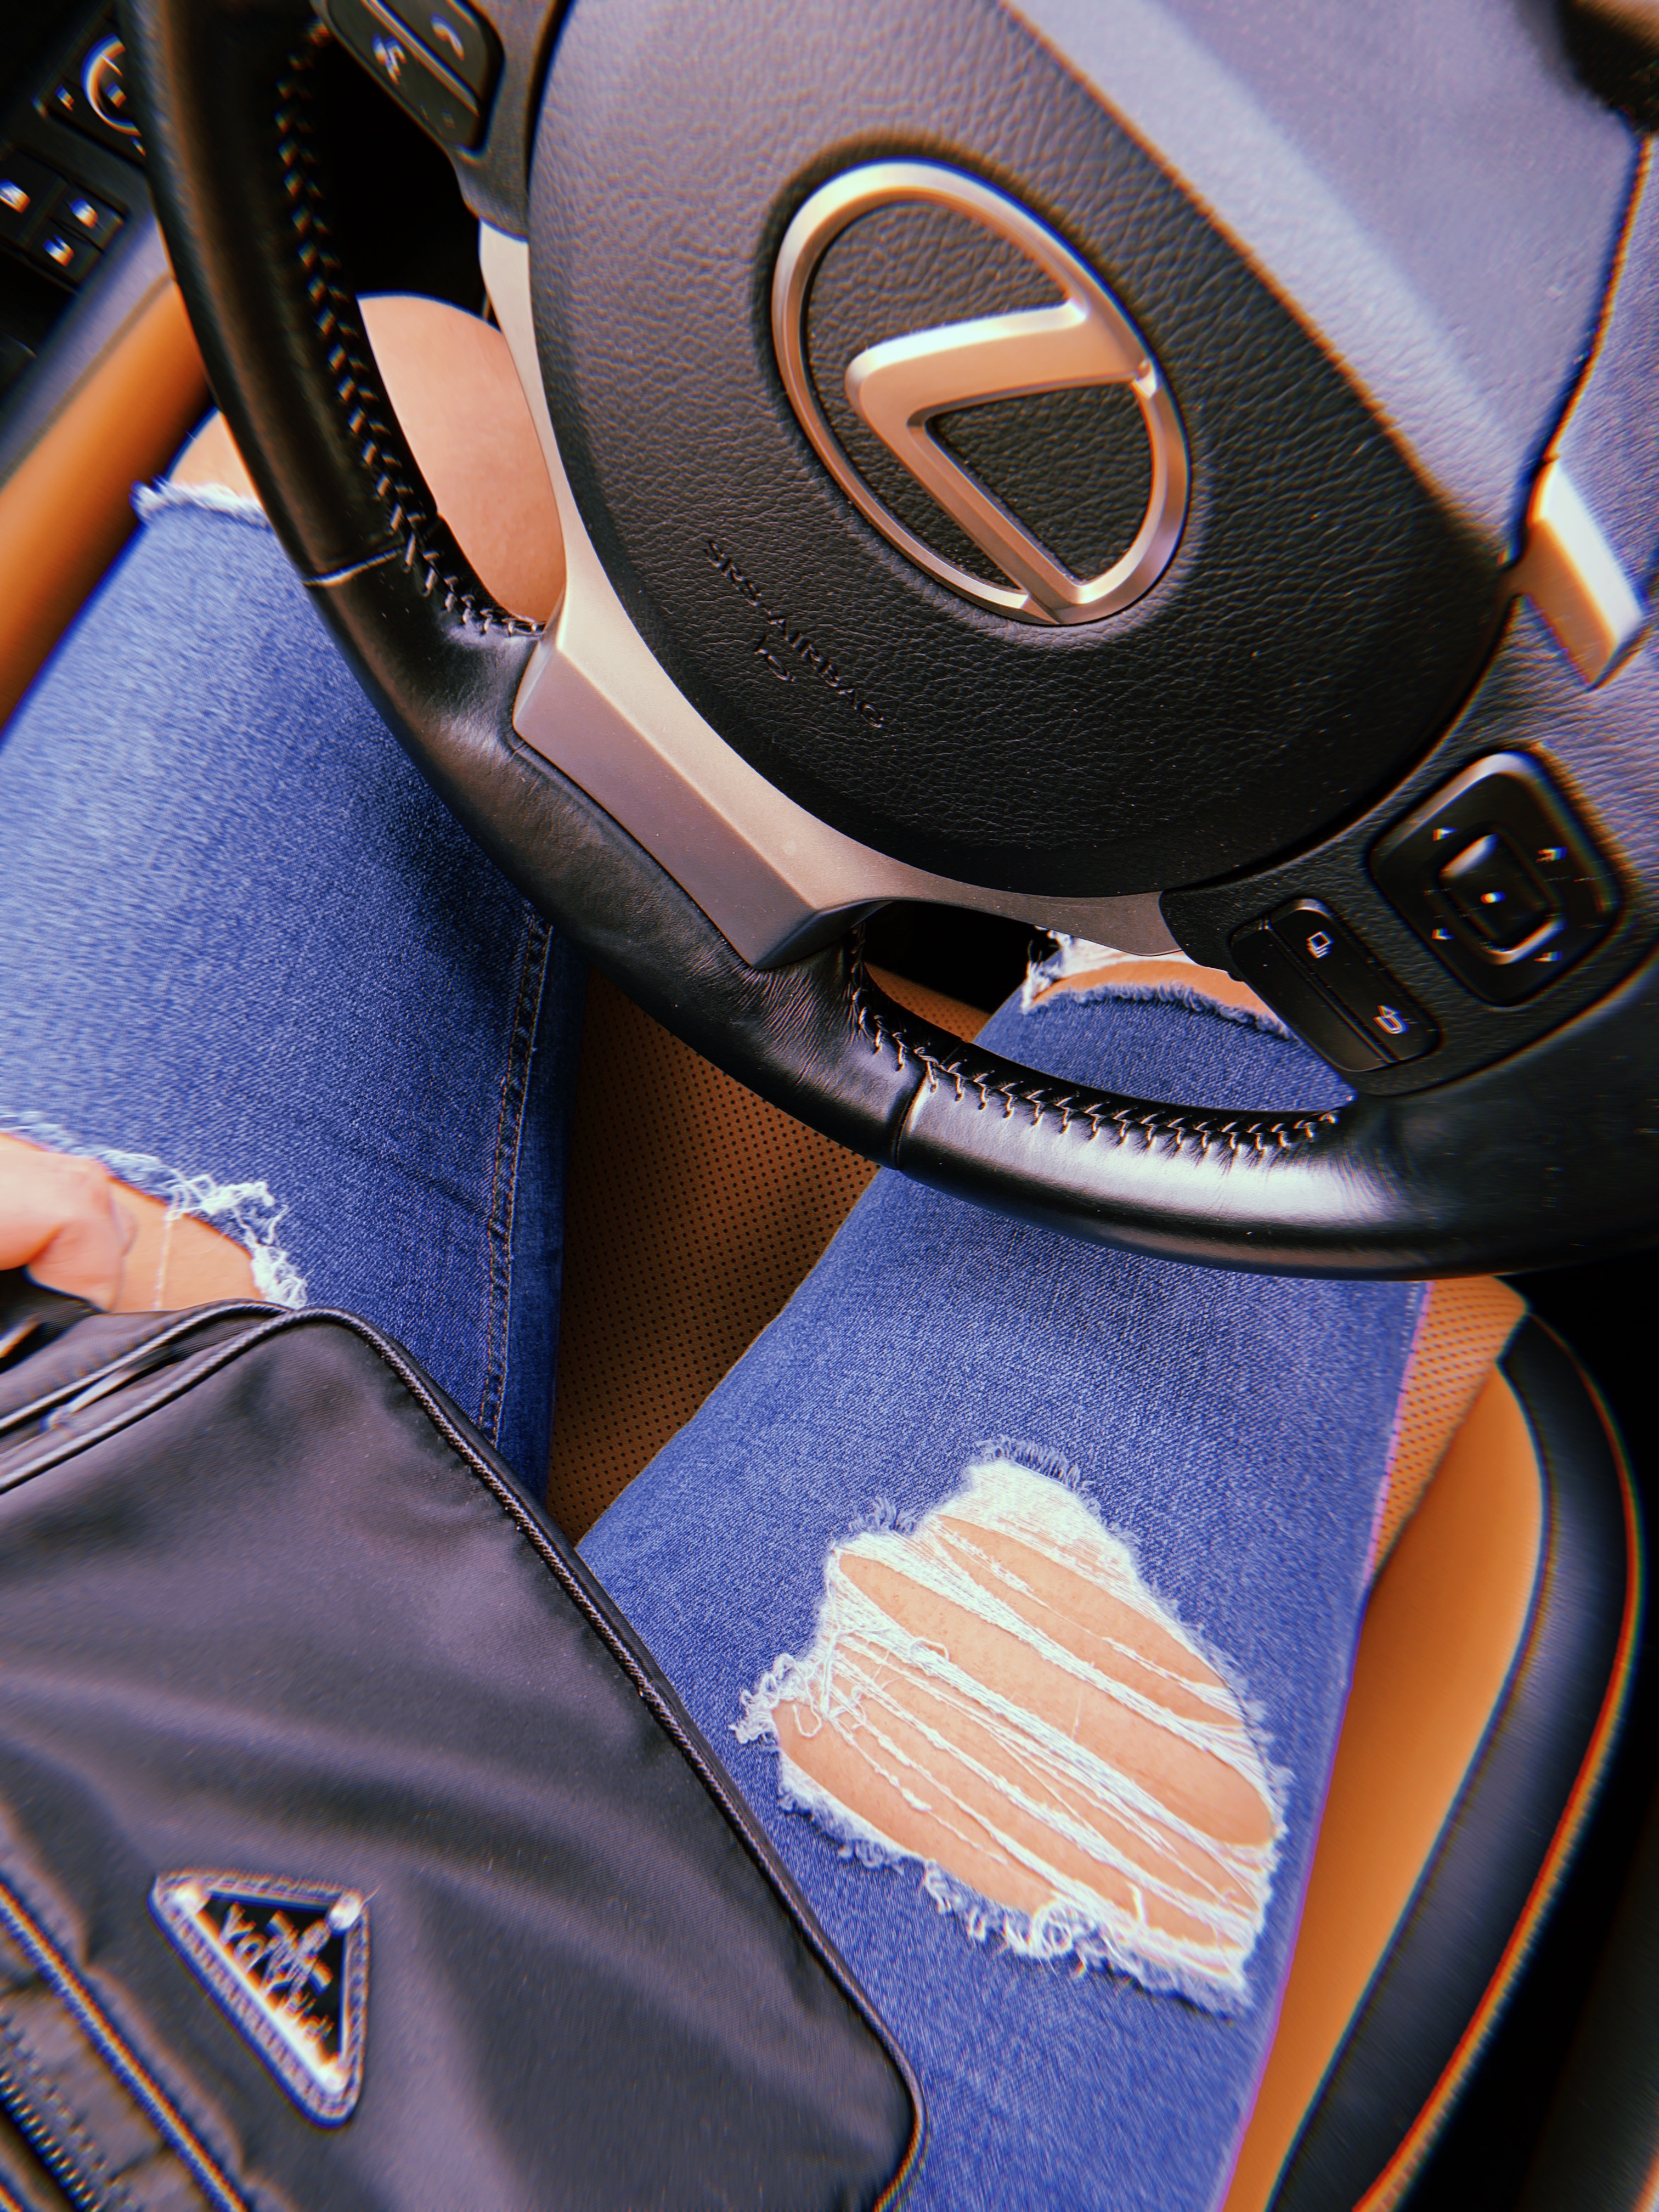 topshop-jeans-lexus-car-steering-wheel-prada-belt-bag